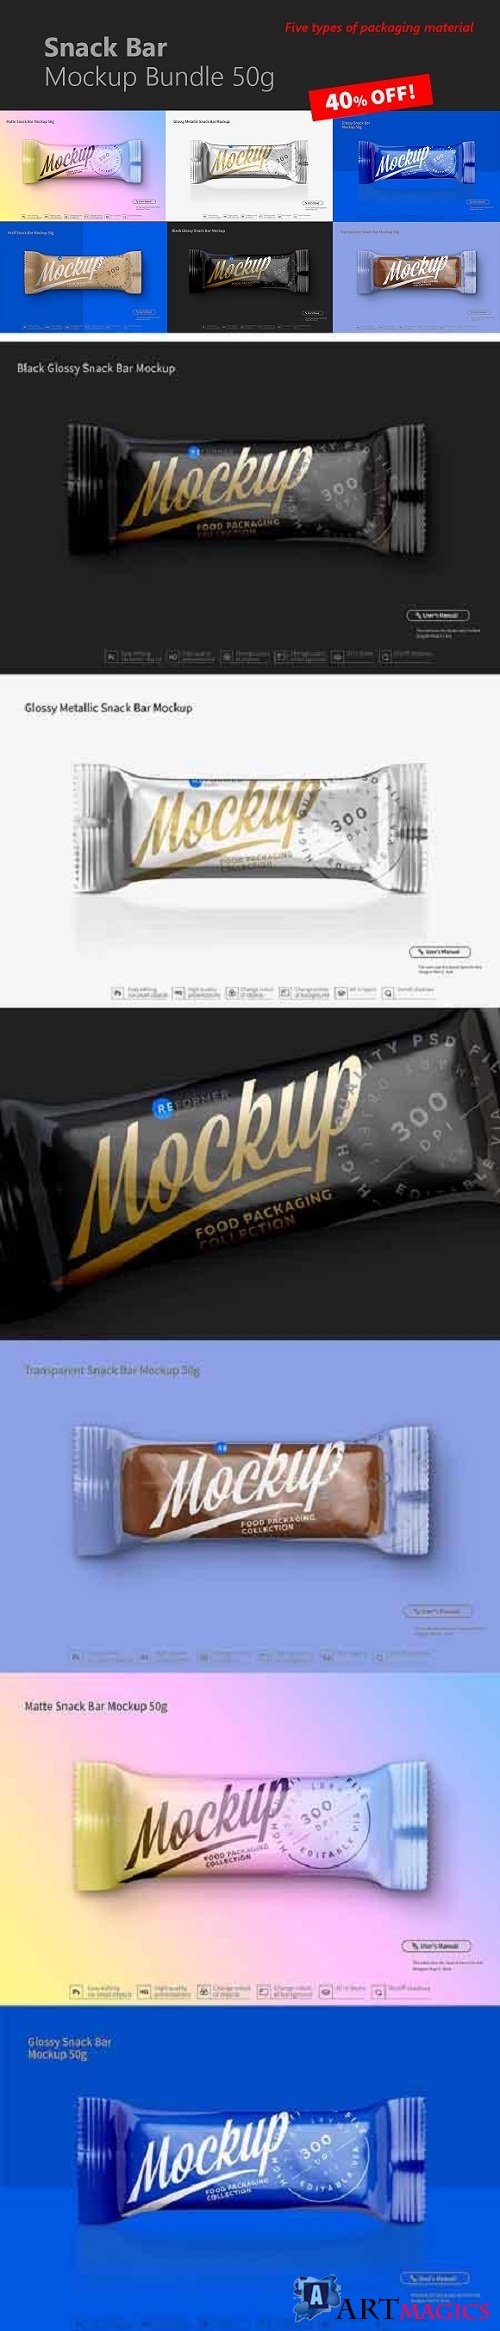 Snack Bar Mockup Bundle 50g 3165915